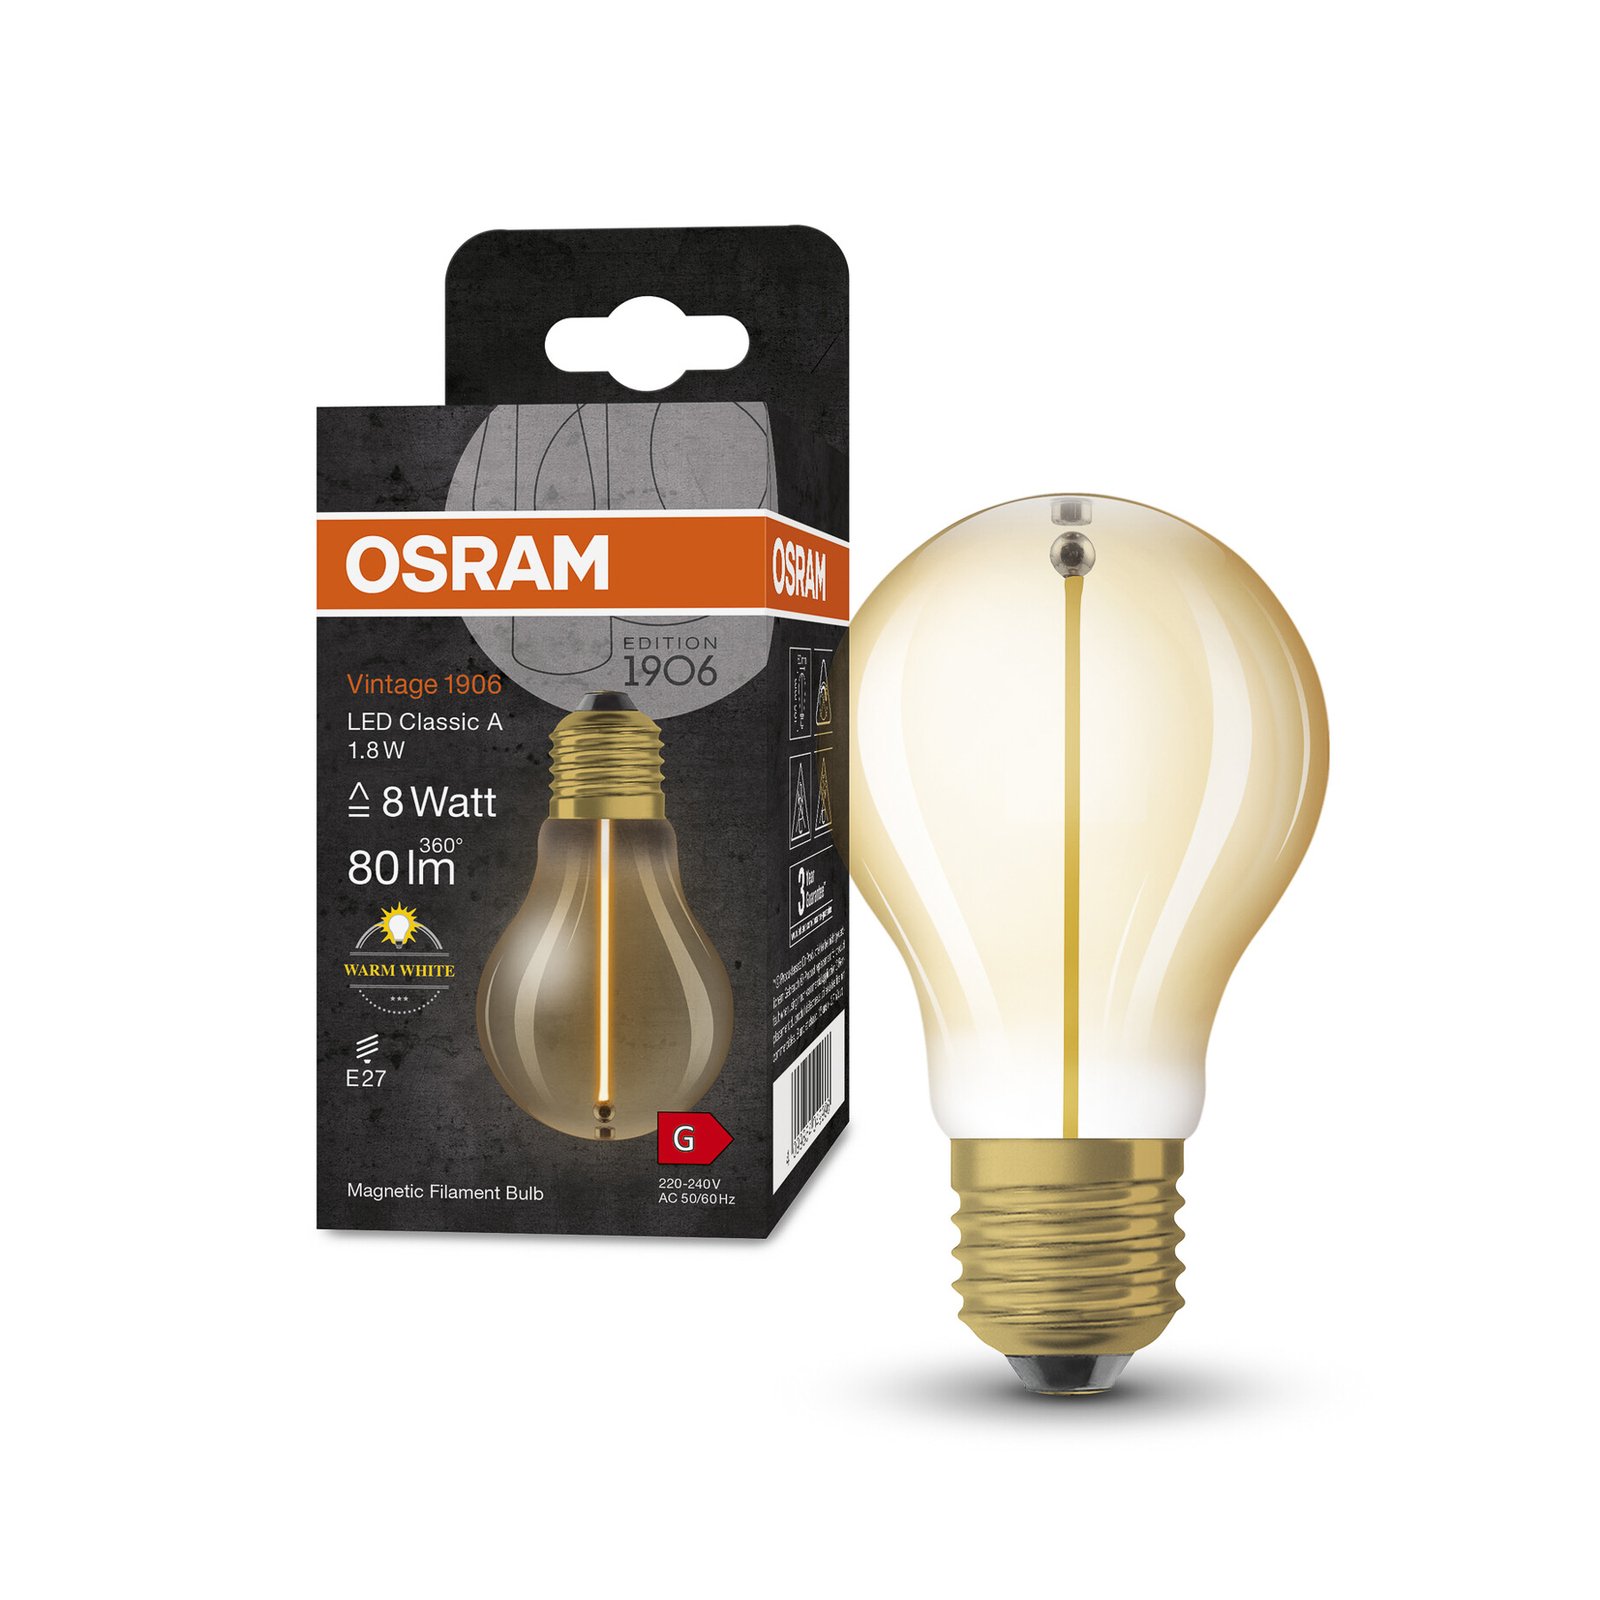 Lampada OSRAM Vintage 1906 LED E27 1.8W 2,700K dourada